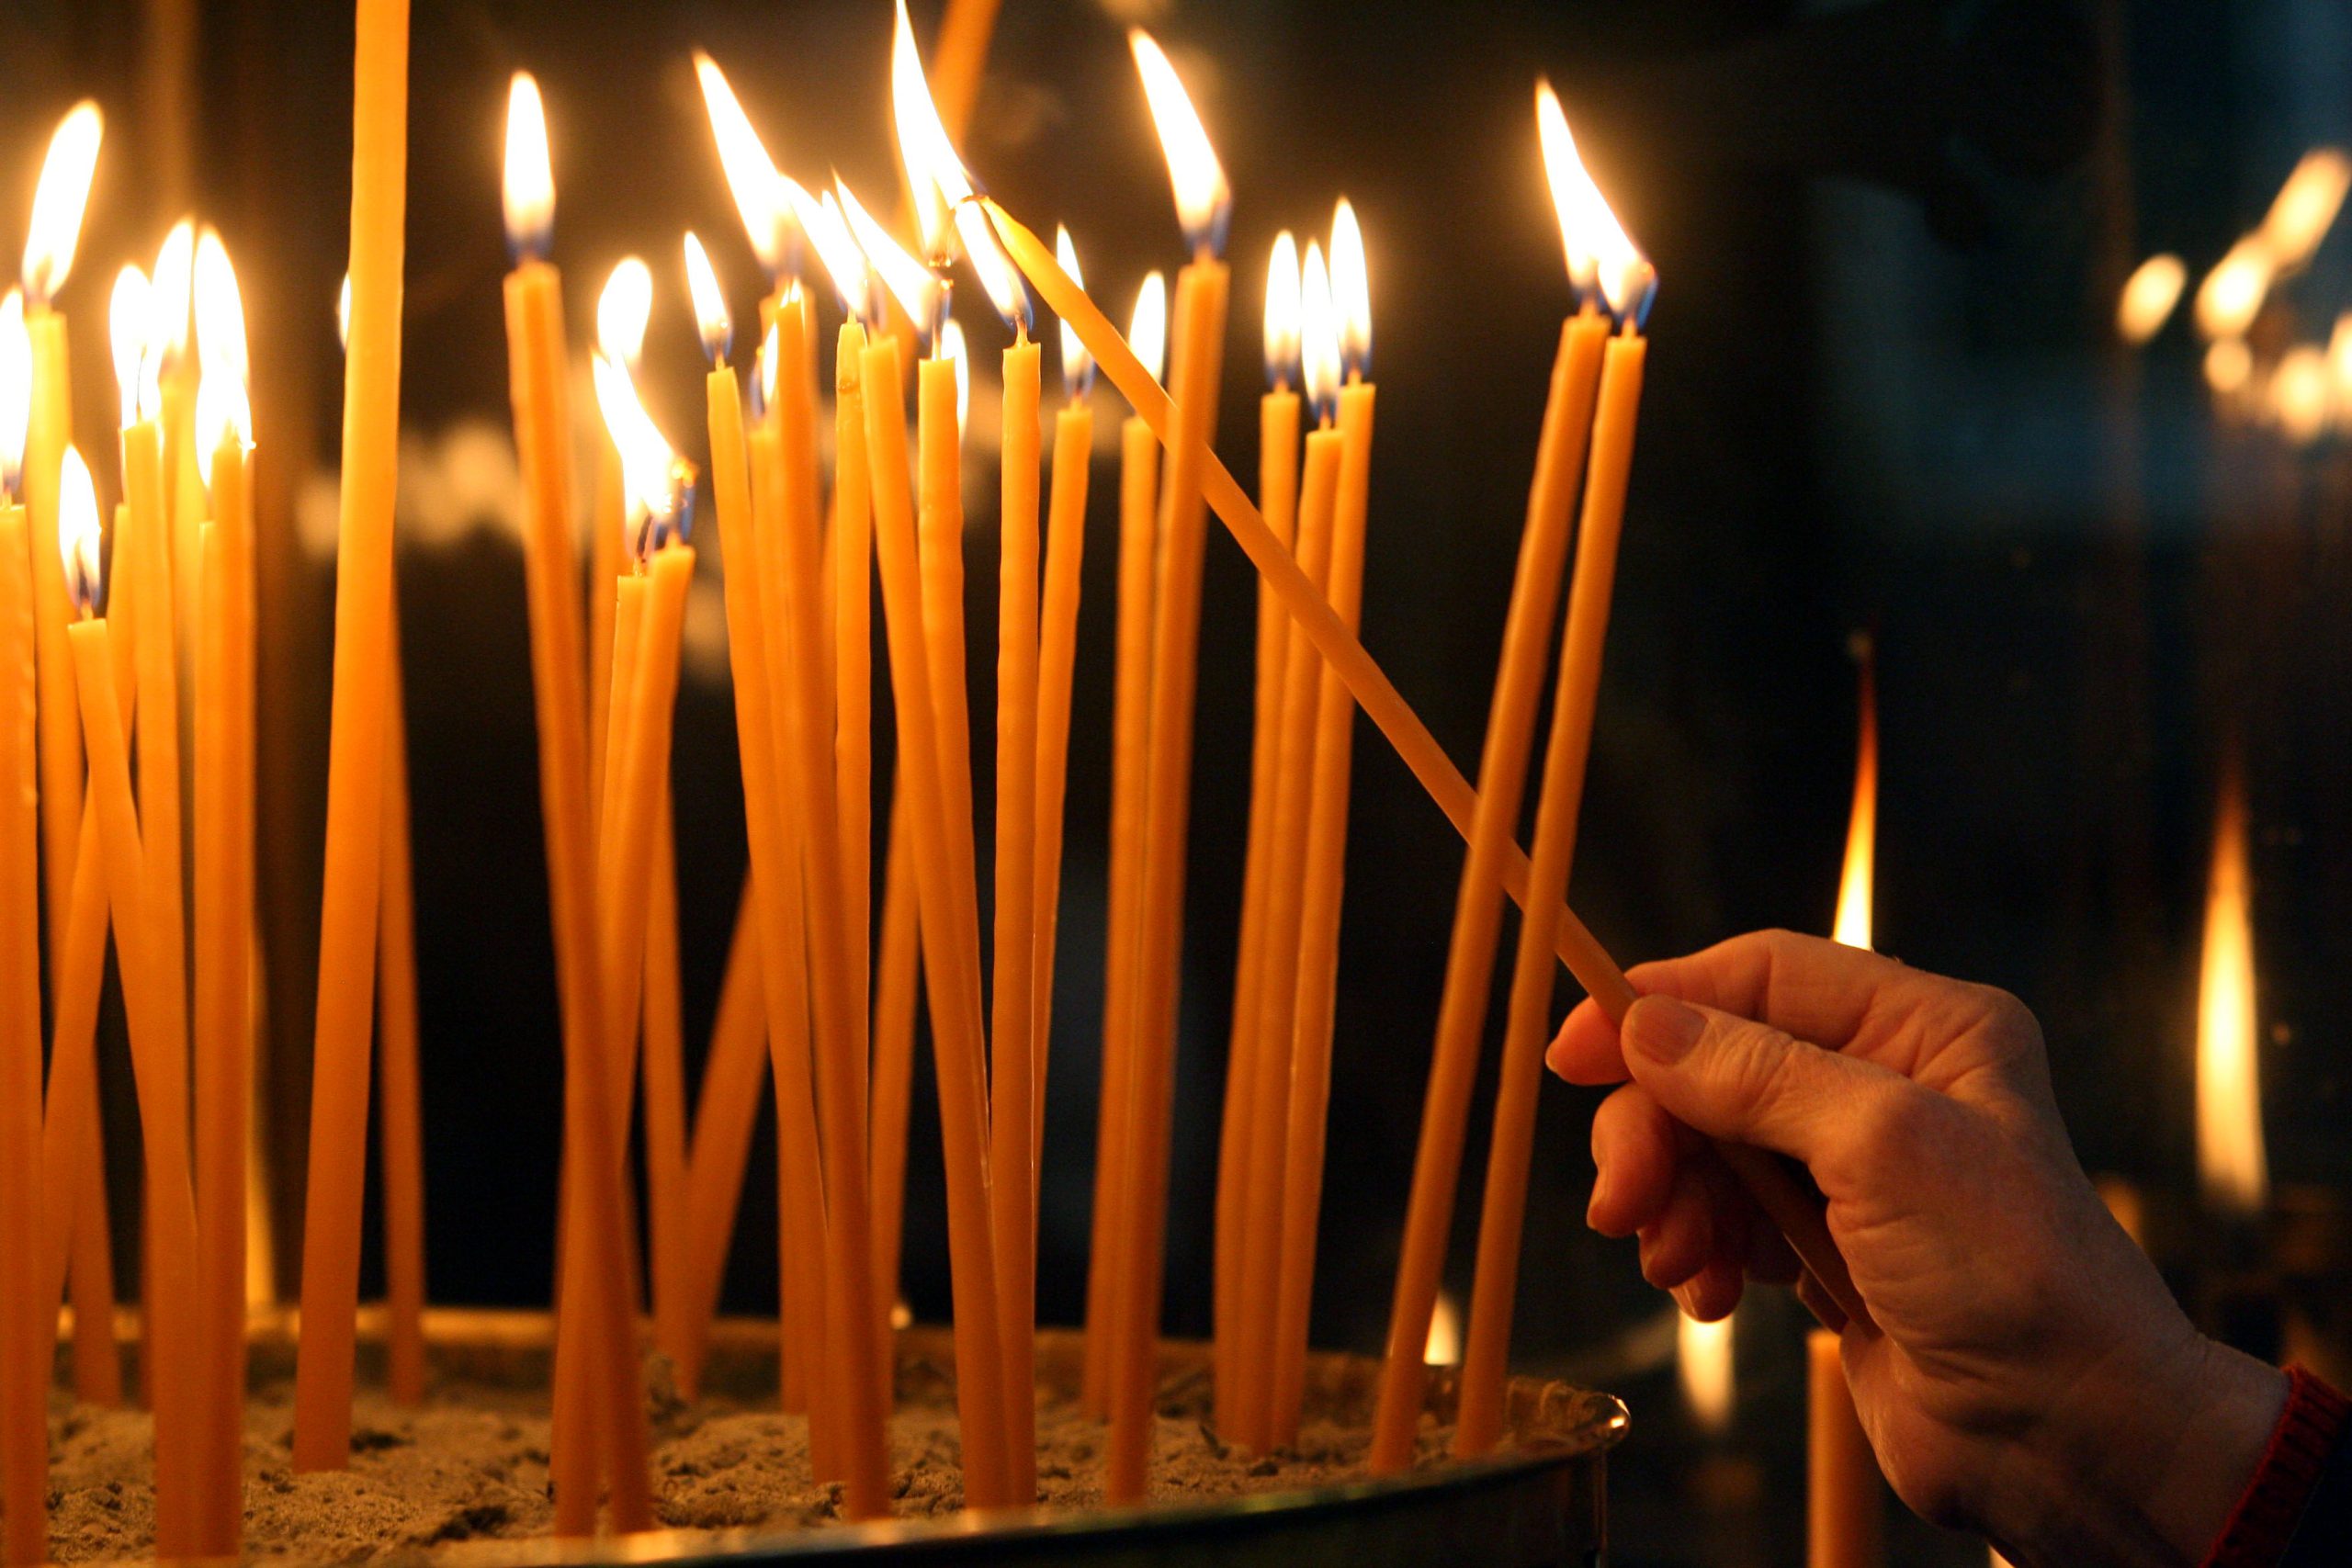 Τι συμβολίζει το κερί και τι πρέπει να λέμε όταν το ανάβουμε;